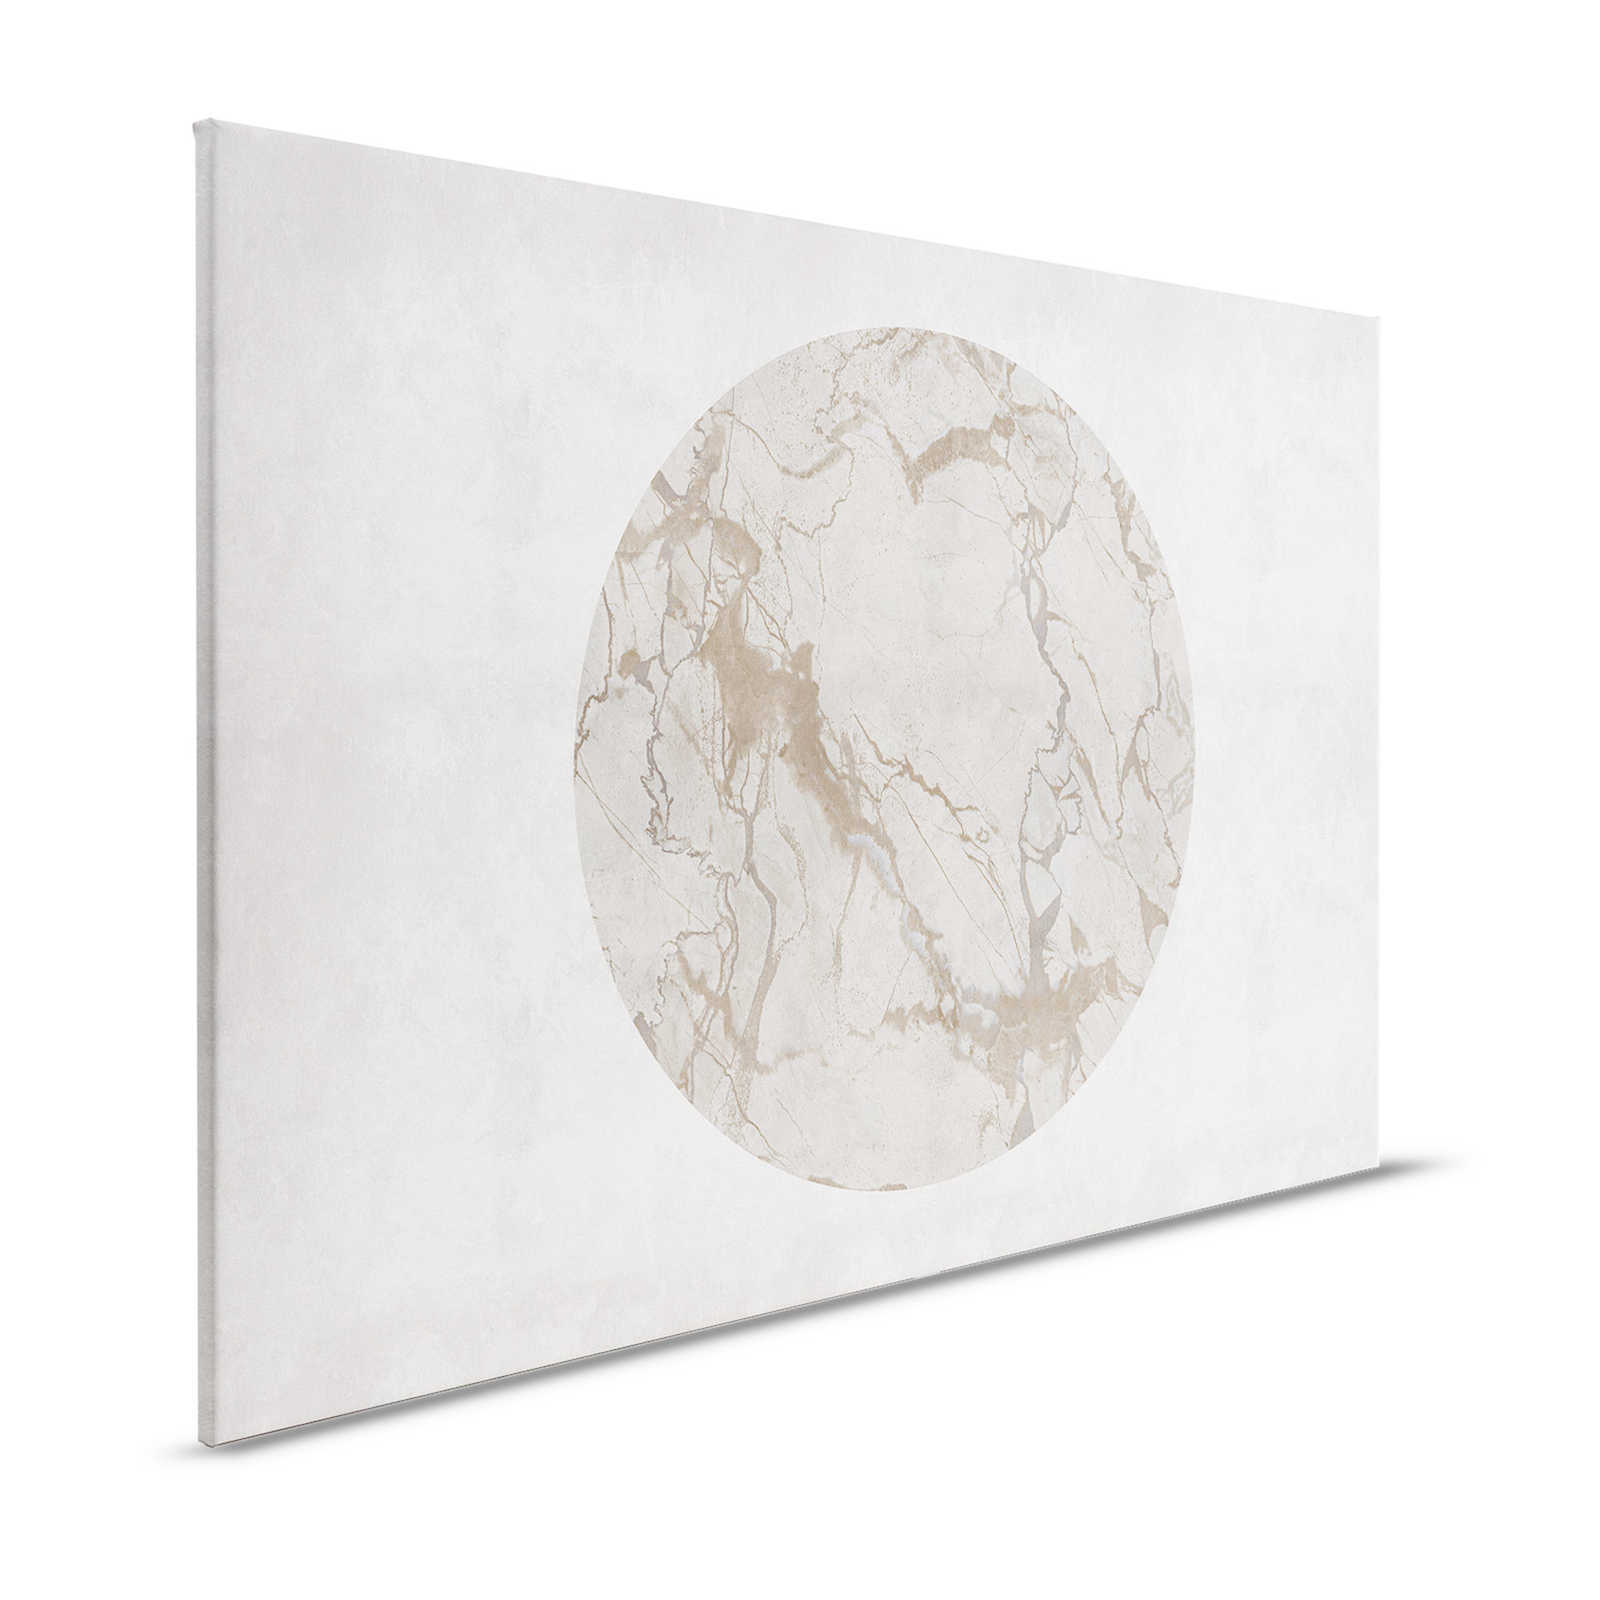 Mercurio 2 - Pintura sobre lienzo Efecto piedra grisáceo con mármol - 1,20 m x 0,80 m
